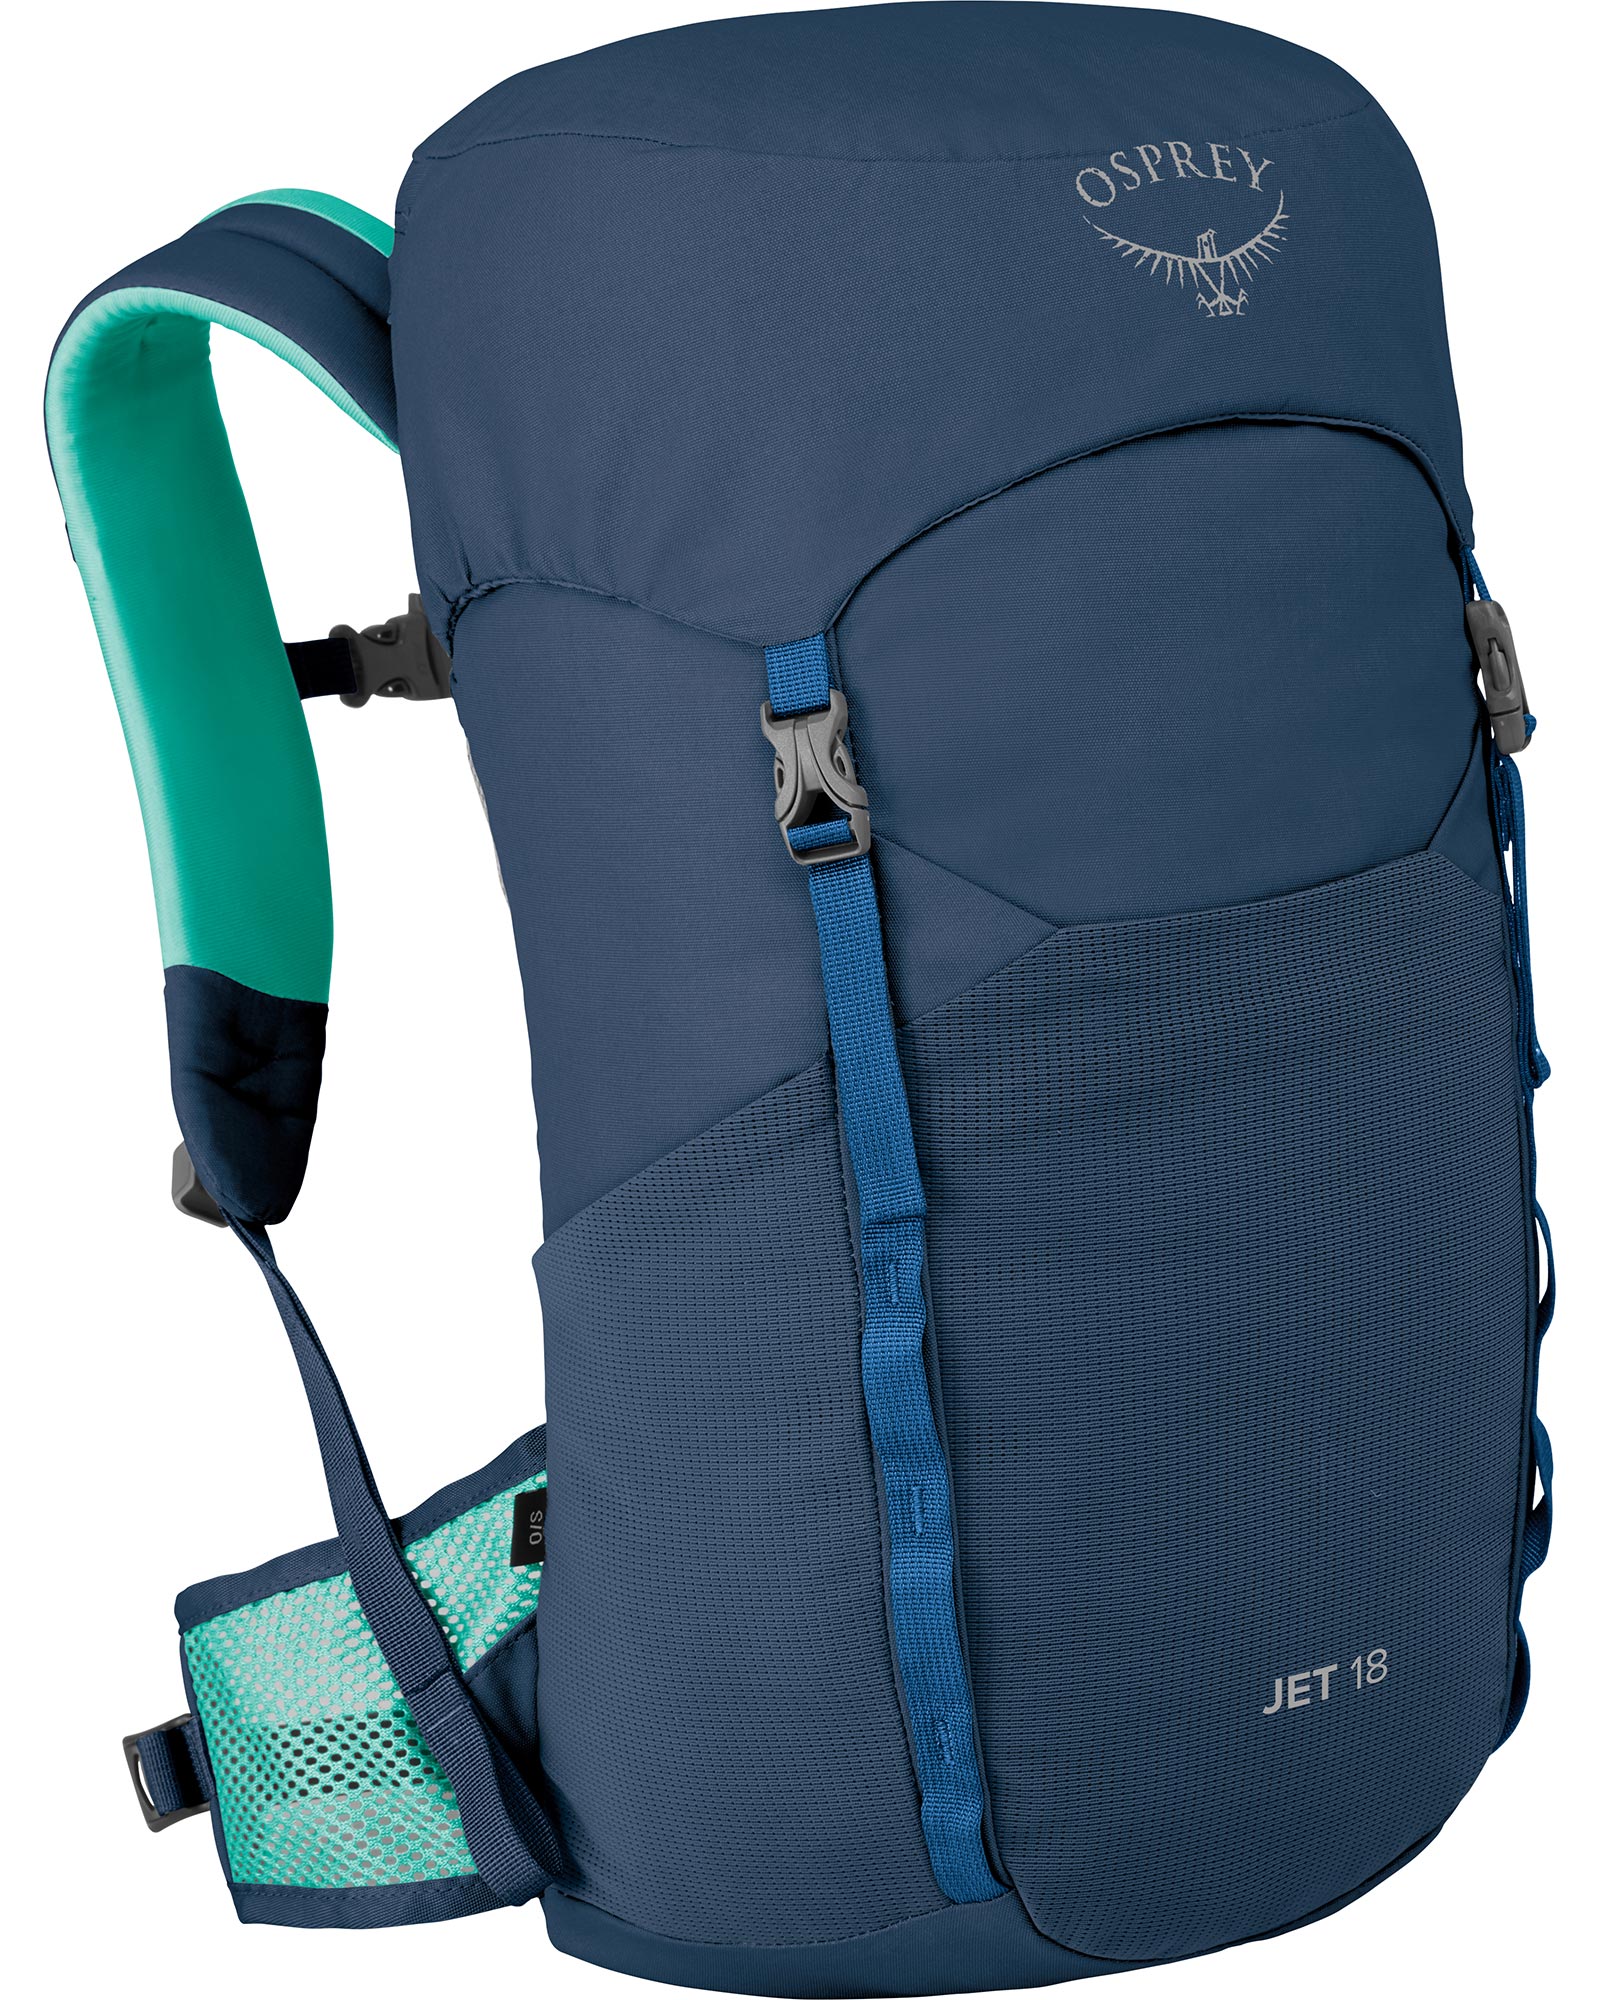 Osprey Jet 18 Kids’ Backpack - Wave Blue